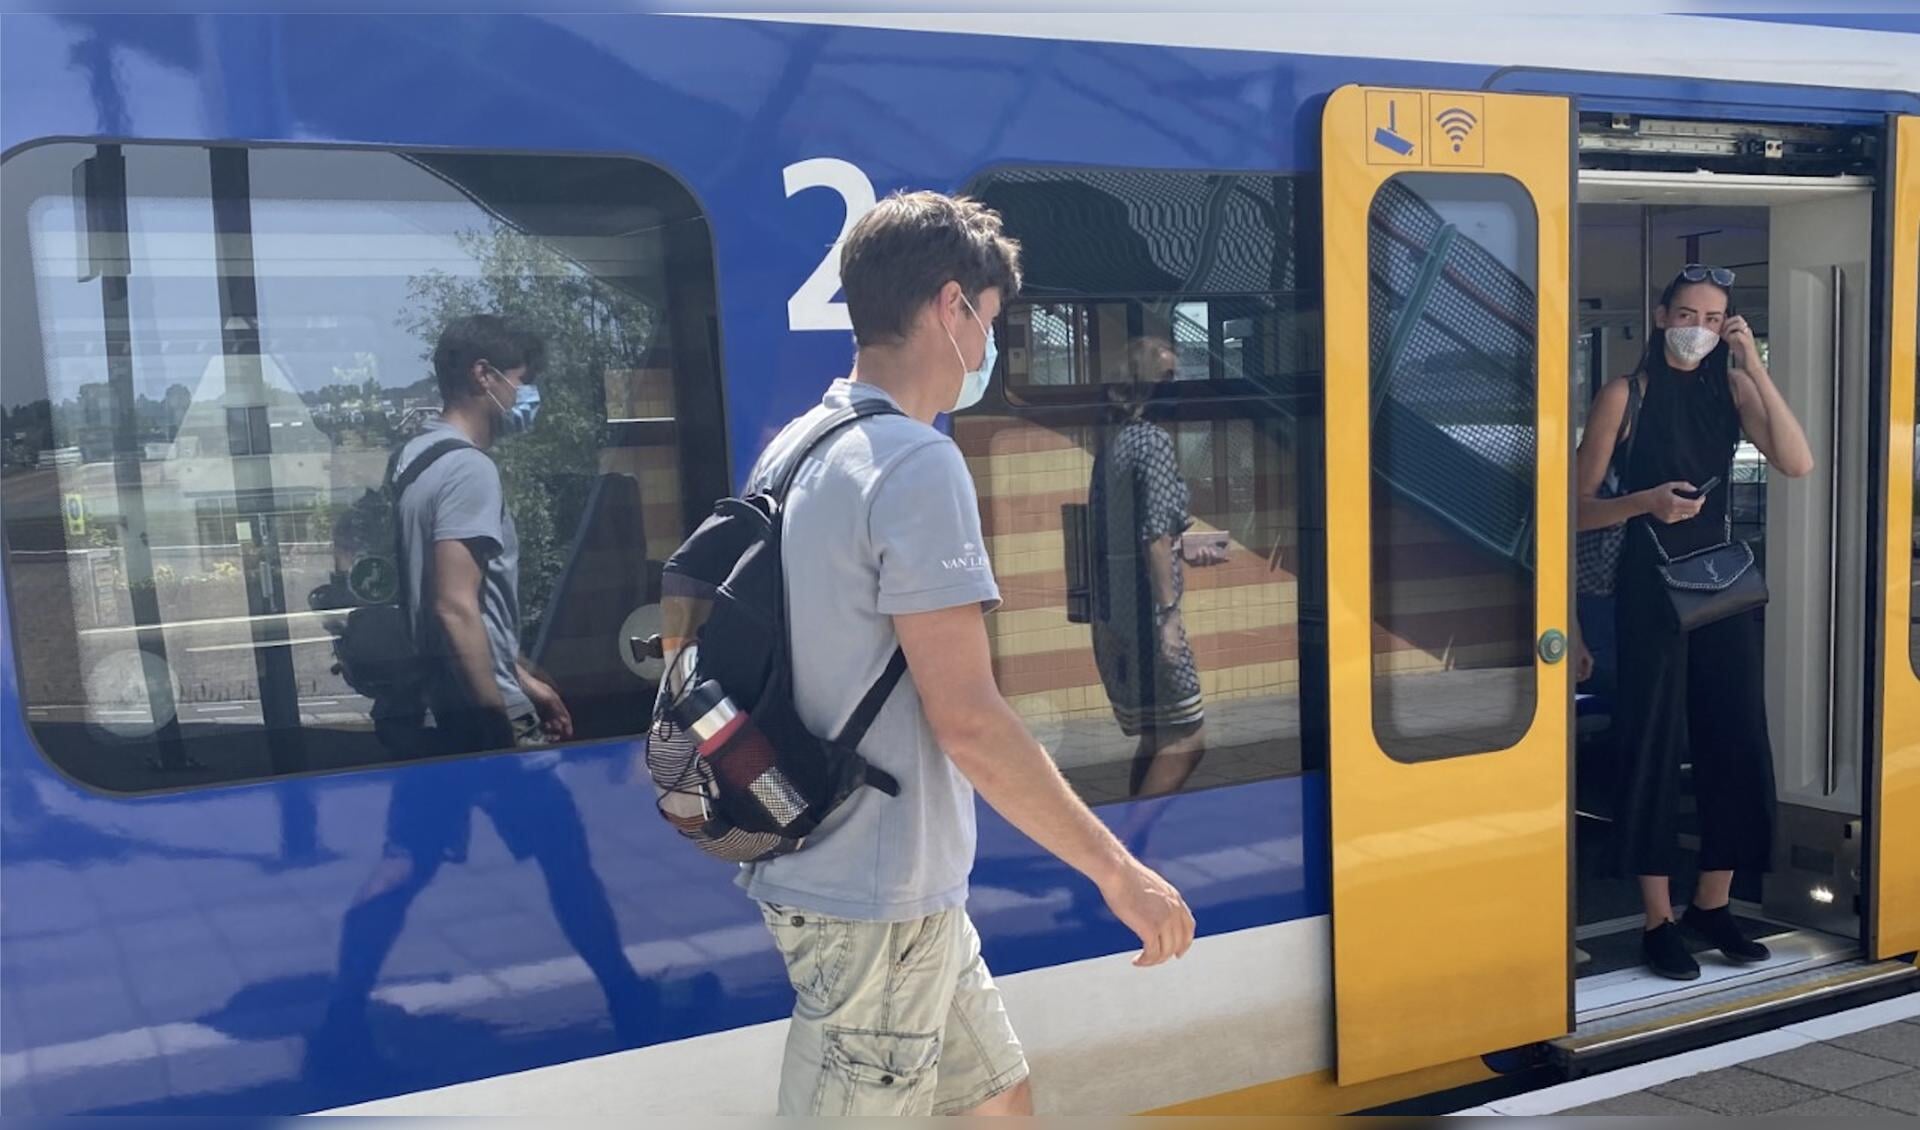 Nederland gaat weer steeds meer 'open'. Vanaf 1 juli geldt dat iedereen weer mag reizen met het openbaar vervoer, maar wel nog steeds met mondkapje. 